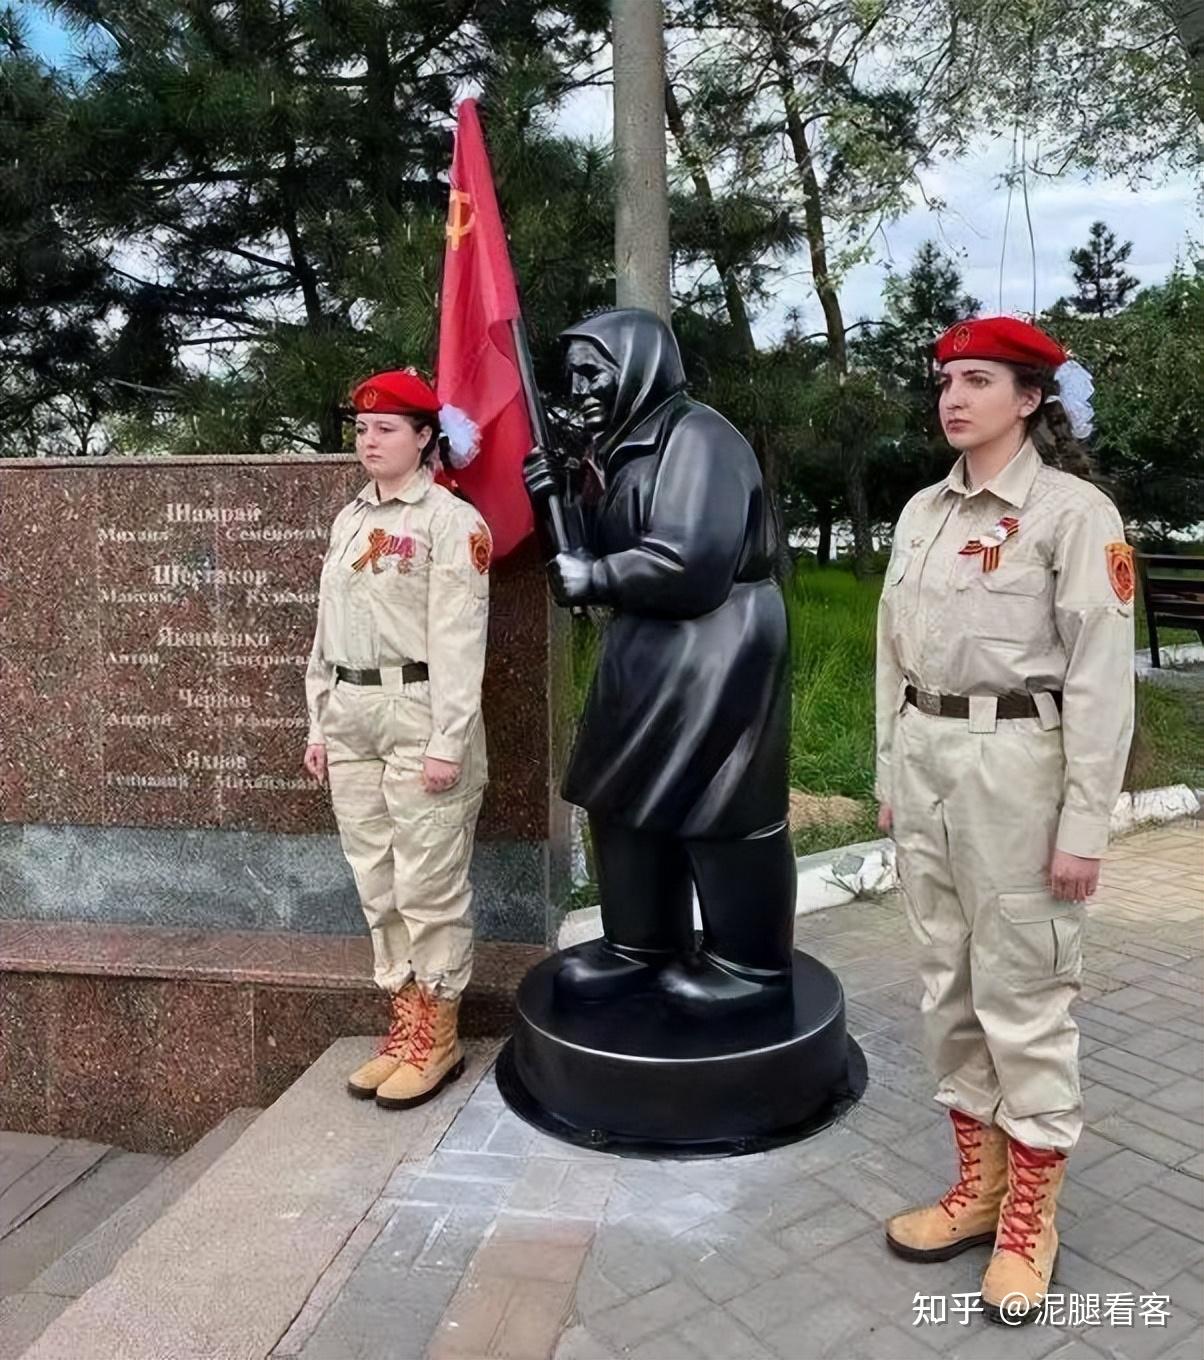 举苏联国旗走红:乌东老奶奶让俄罗斯破防了,苏联再次回归?